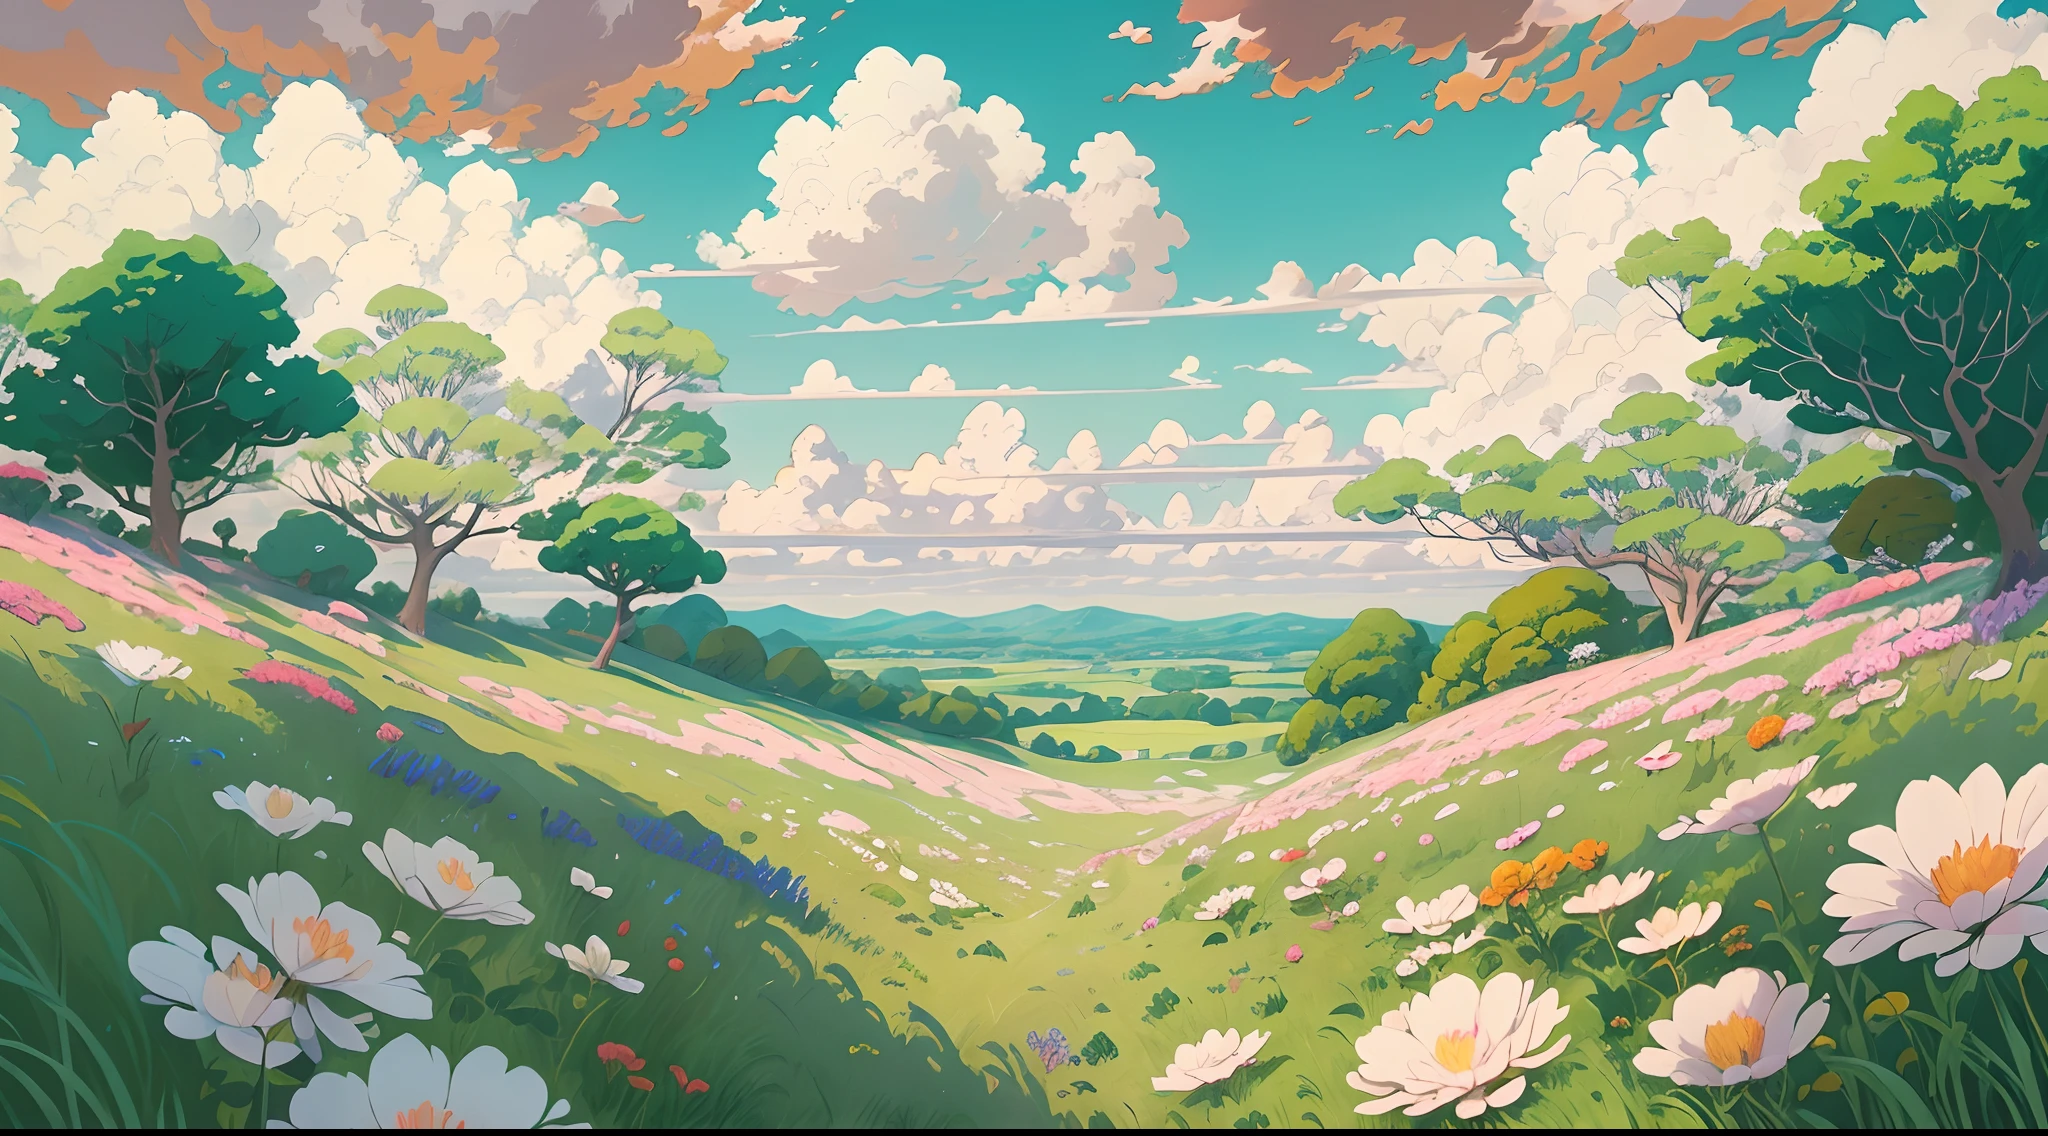 realistisch, authentisch, wunderschönes und erstaunliches Landschaftsölgemälde Studio Ghibli Hayao Miyazaki&#39;Blütenblatt-Grasland mit blauem Himmel und weißen Wolken --v6